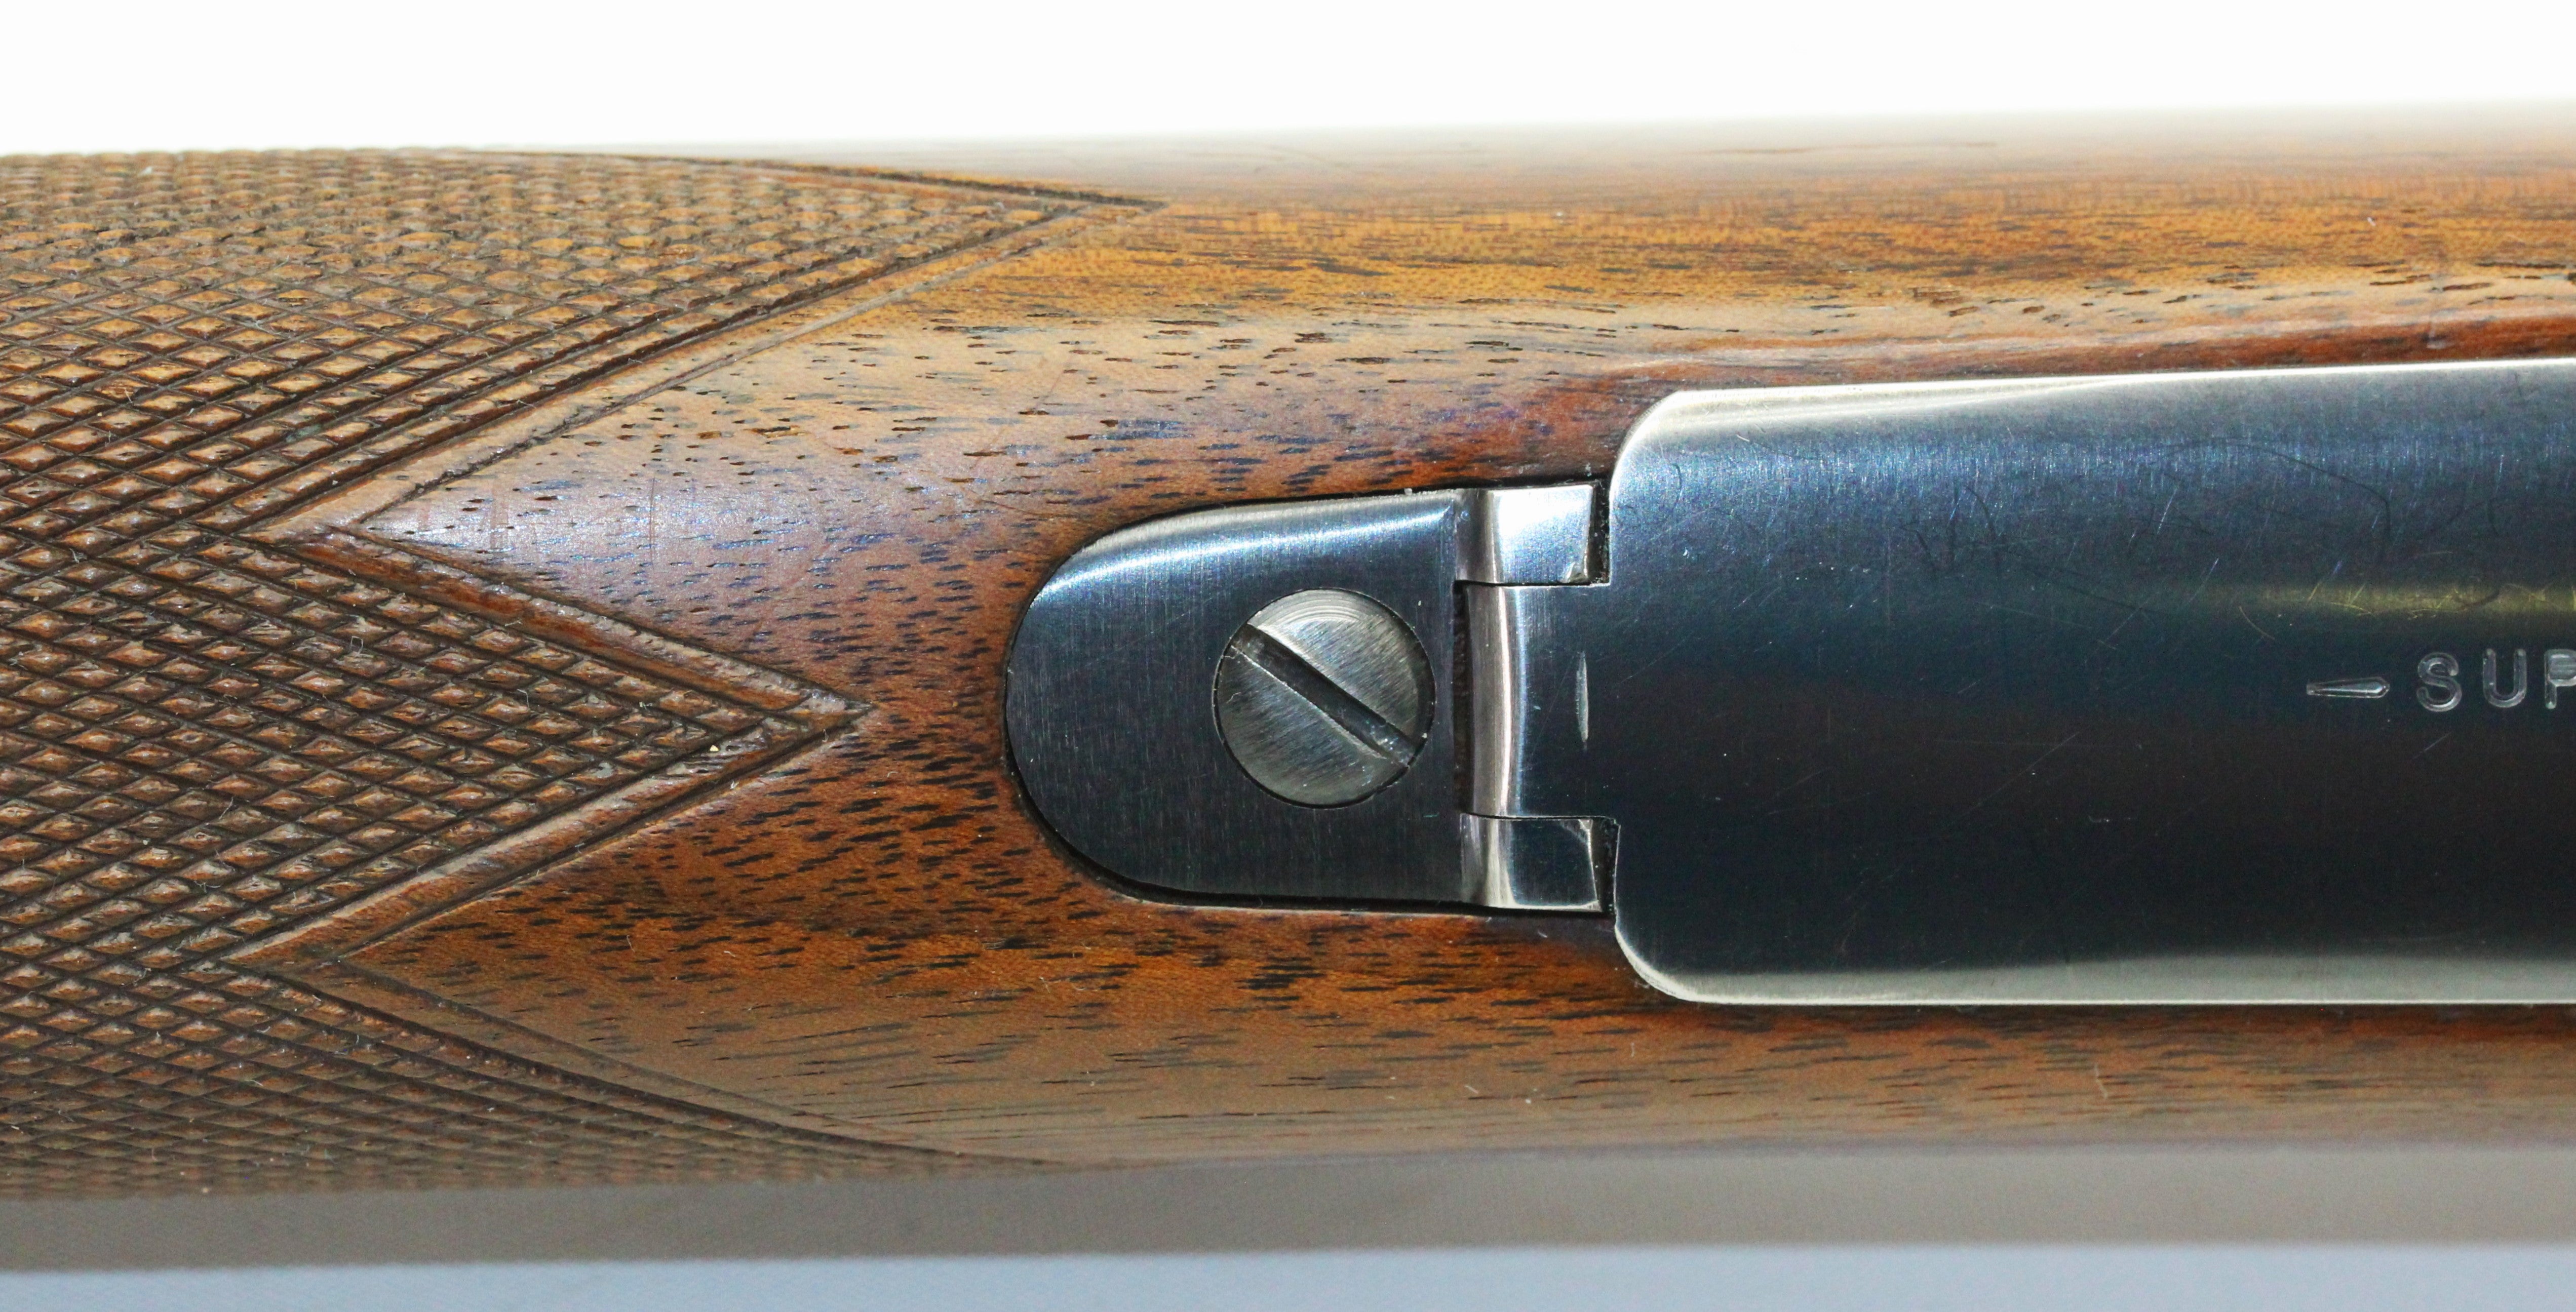 .270 W.C.F. Super Grade Rifle - 1950